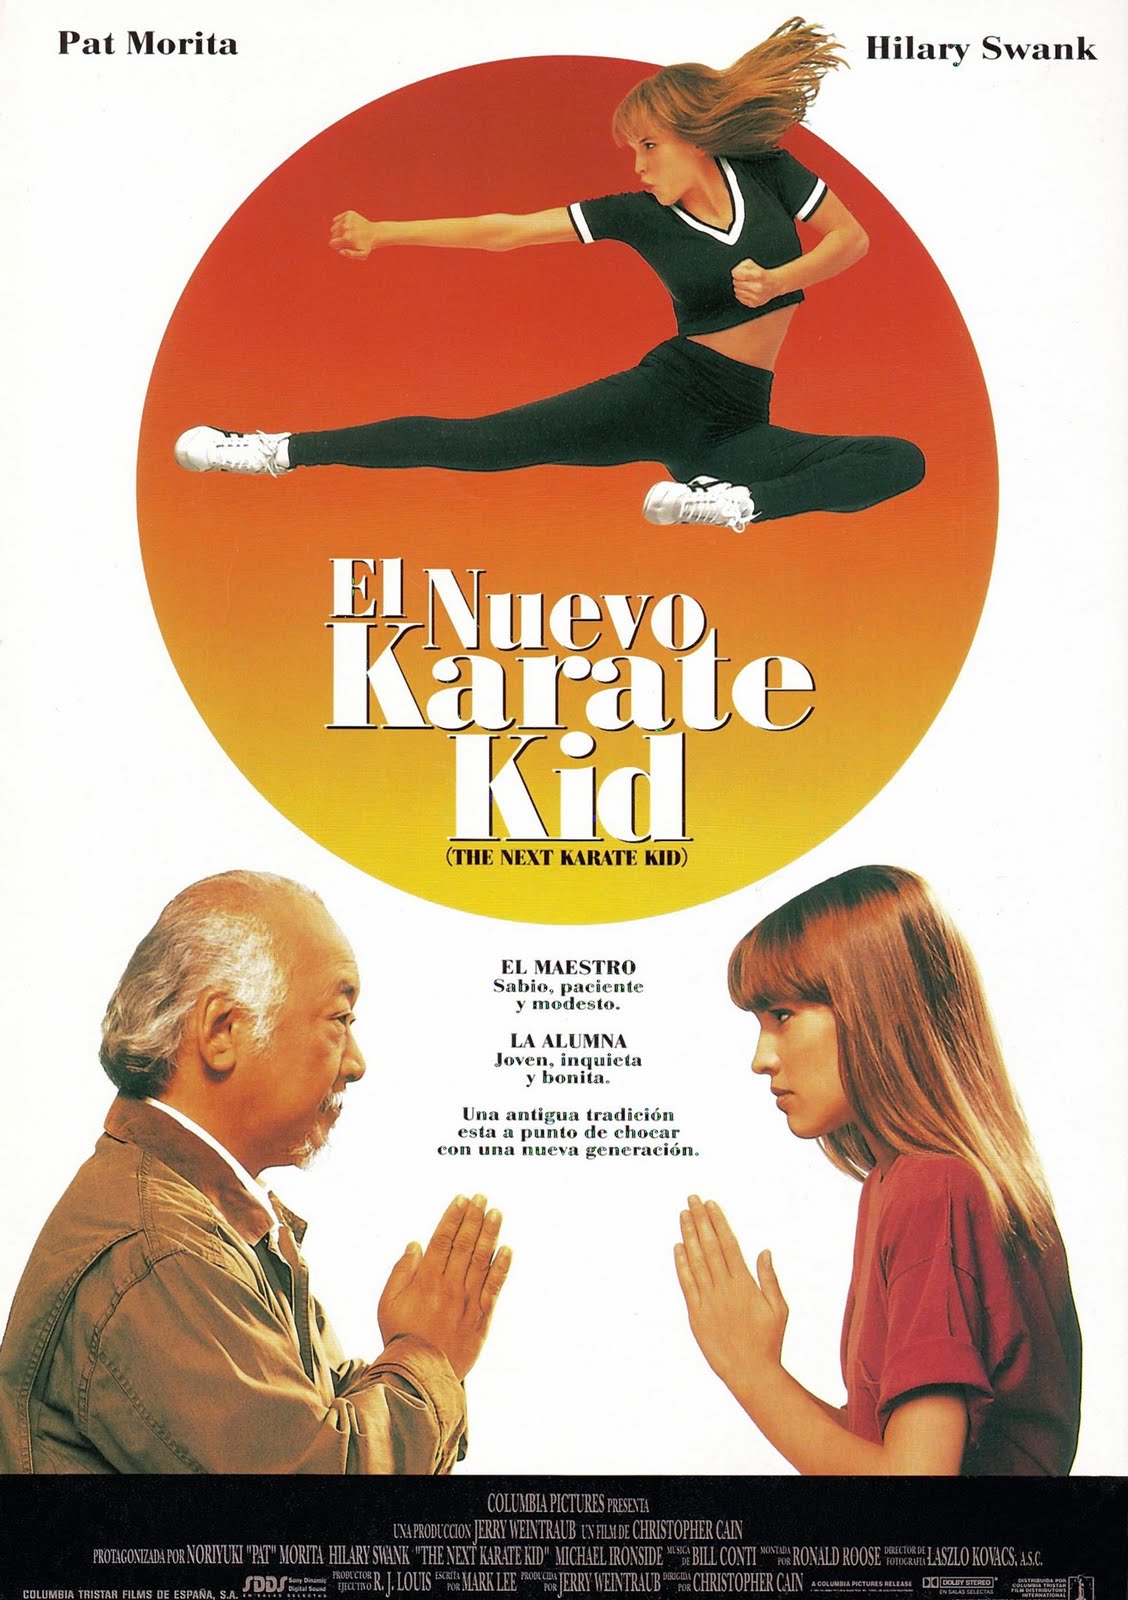 El Karate Kid [1984]